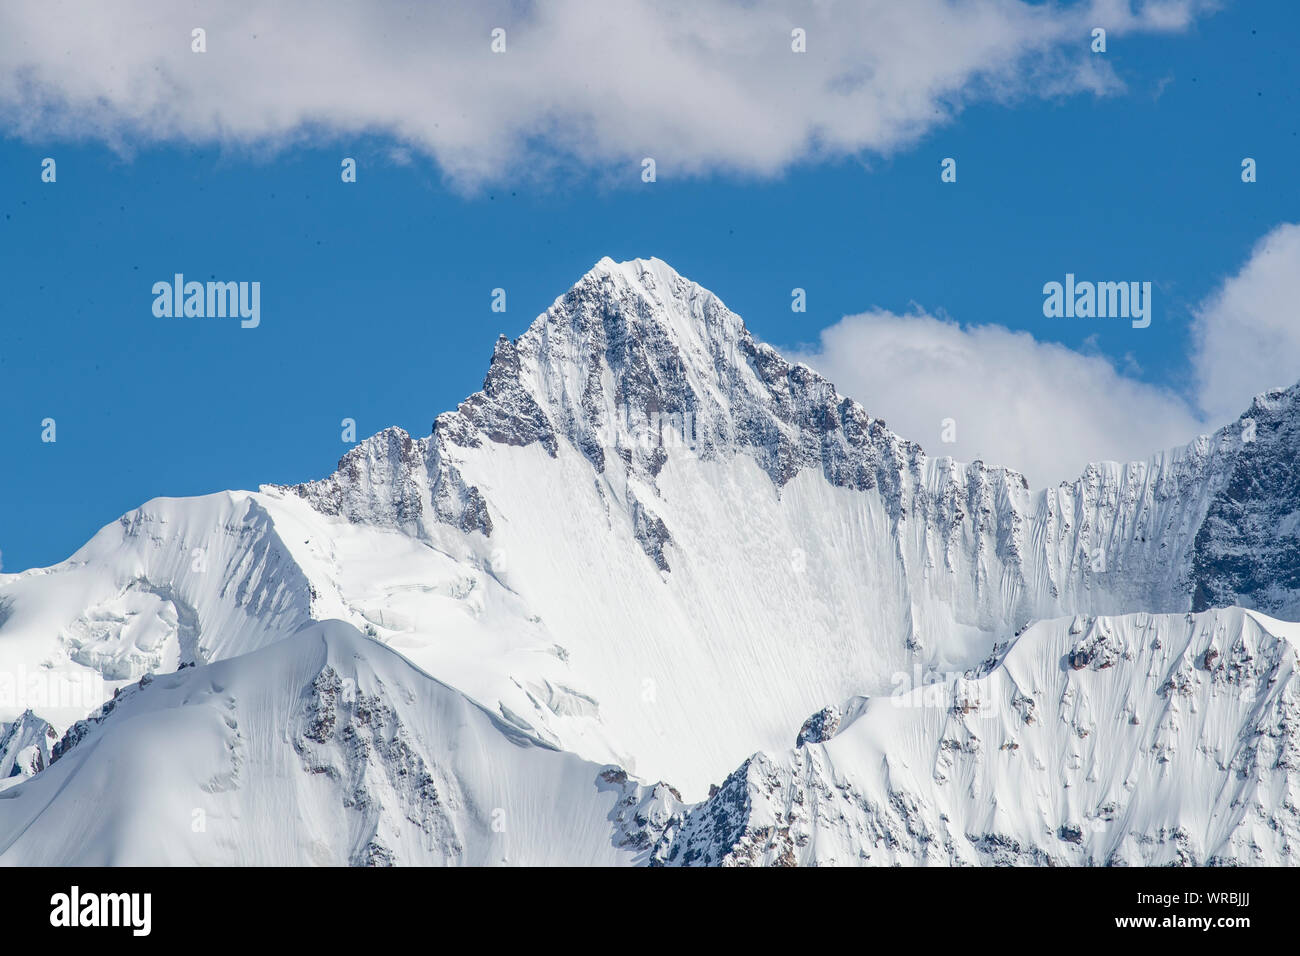 El paisaje de las montañas de nieve incluyendo el pico Khan Tengri, parte de la cordillera de Tian Shan en la frontera entre China y Kirguistán de Yili, no Foto de stock